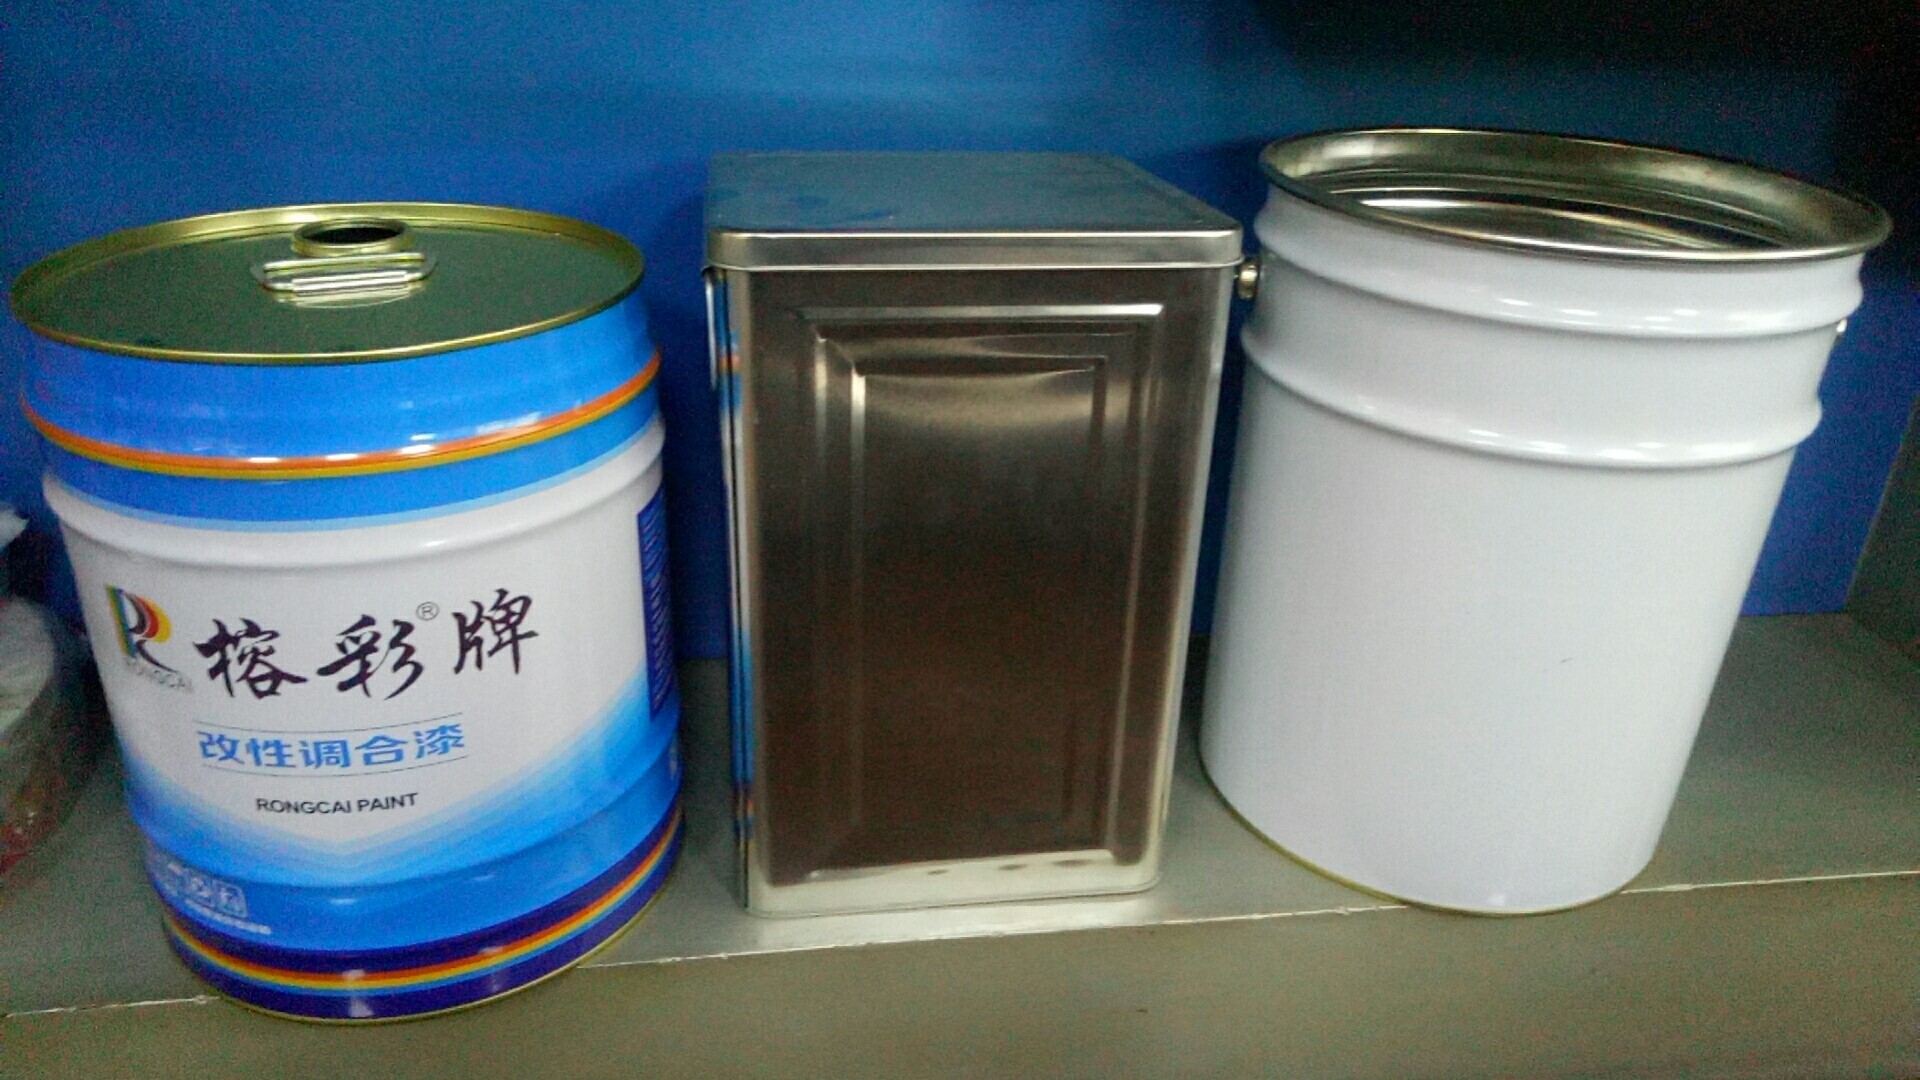 广东兴发印铁制罐有限公司将亮相CIPPME上海国际包装展